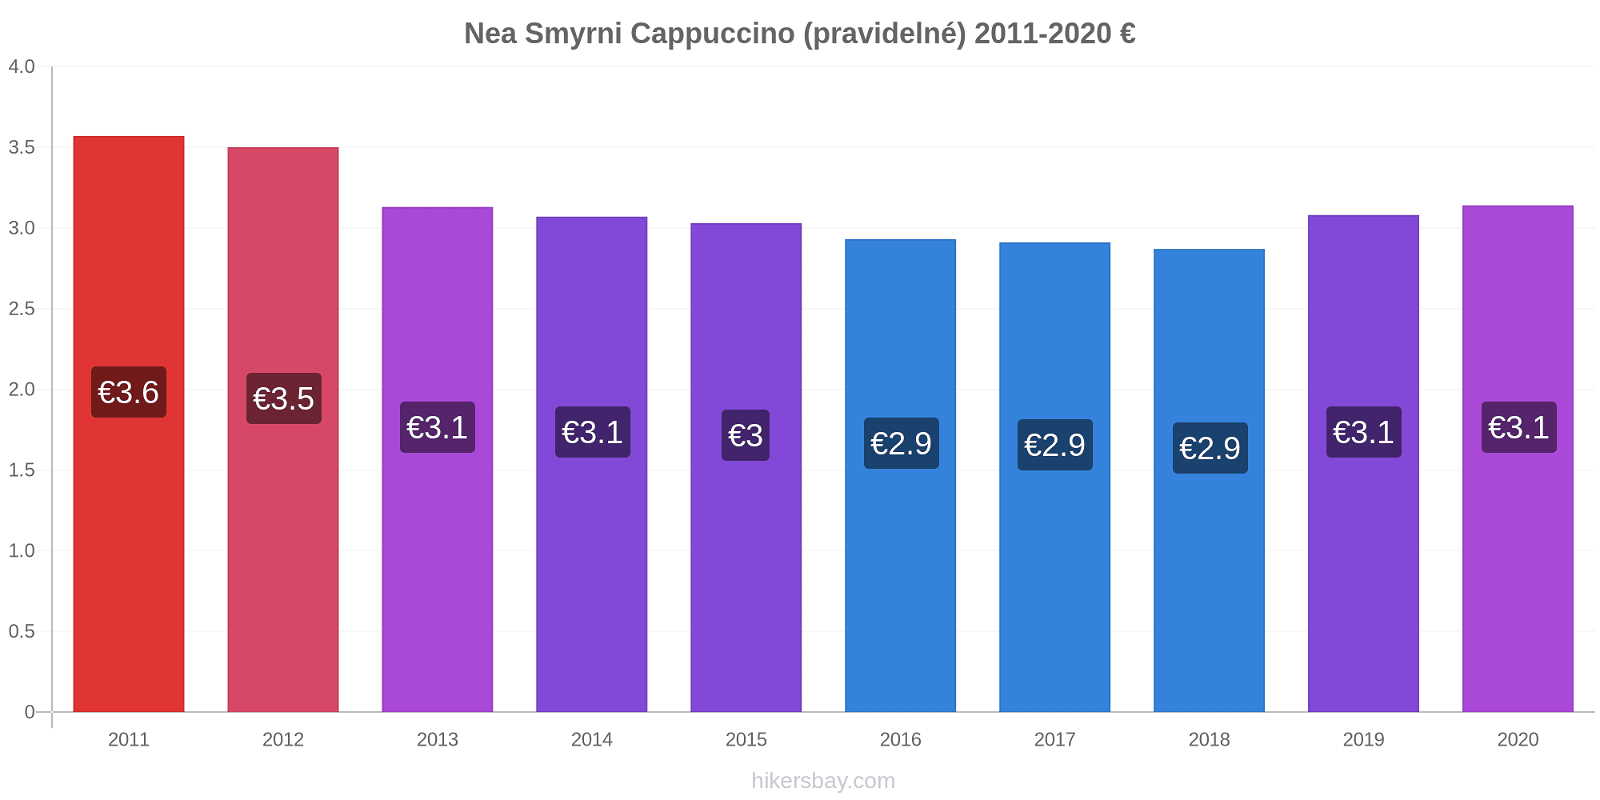 Nea Smyrni změny cen Cappuccino (pravidelné) hikersbay.com